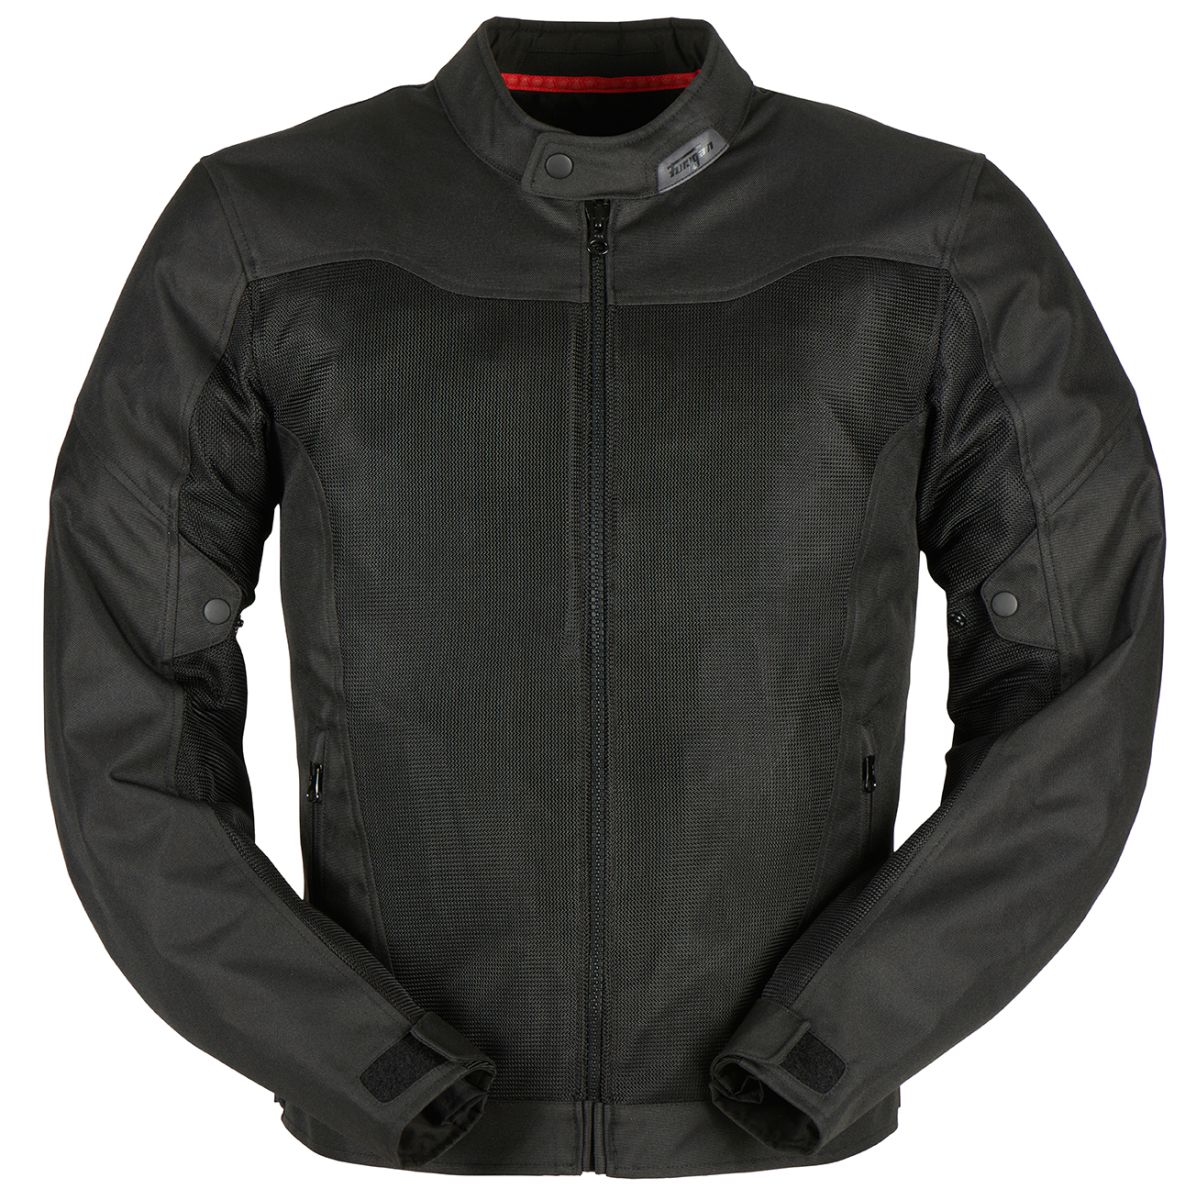 Image of Furygan Mistral 3 Evo Jacket Black Size S EN